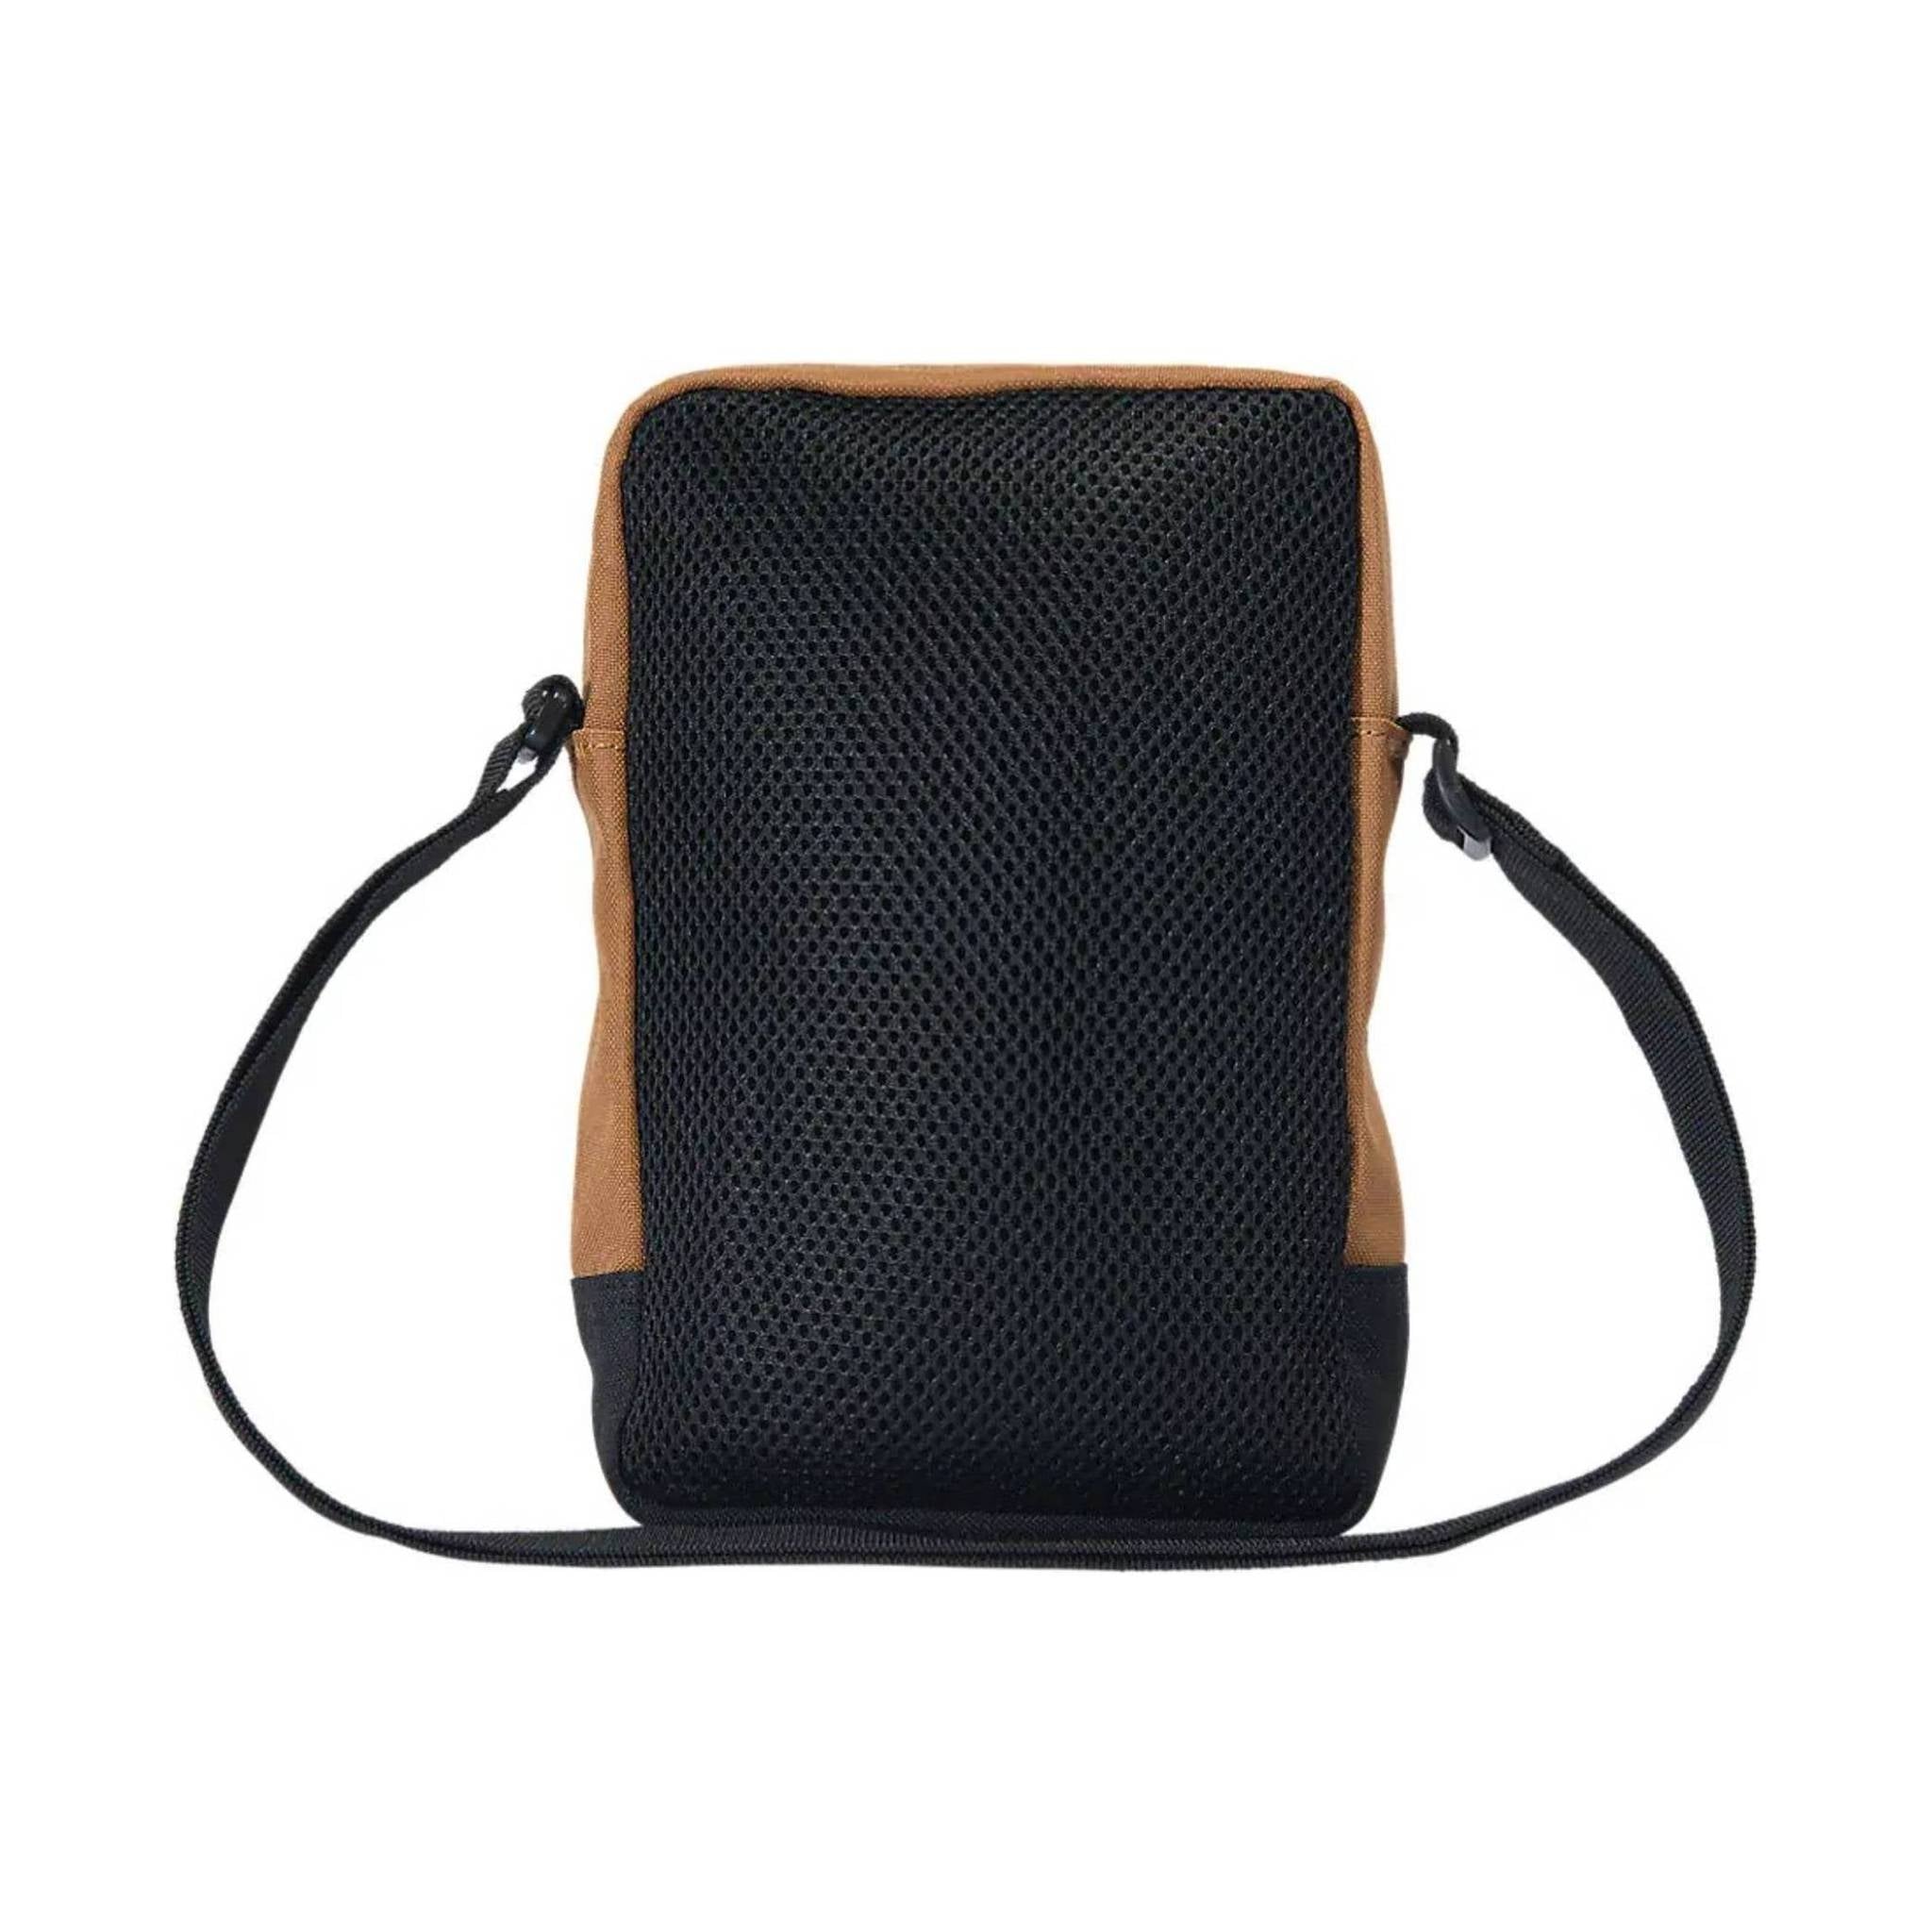 Carhartt Brown Crossbody Zip Bag - Sample